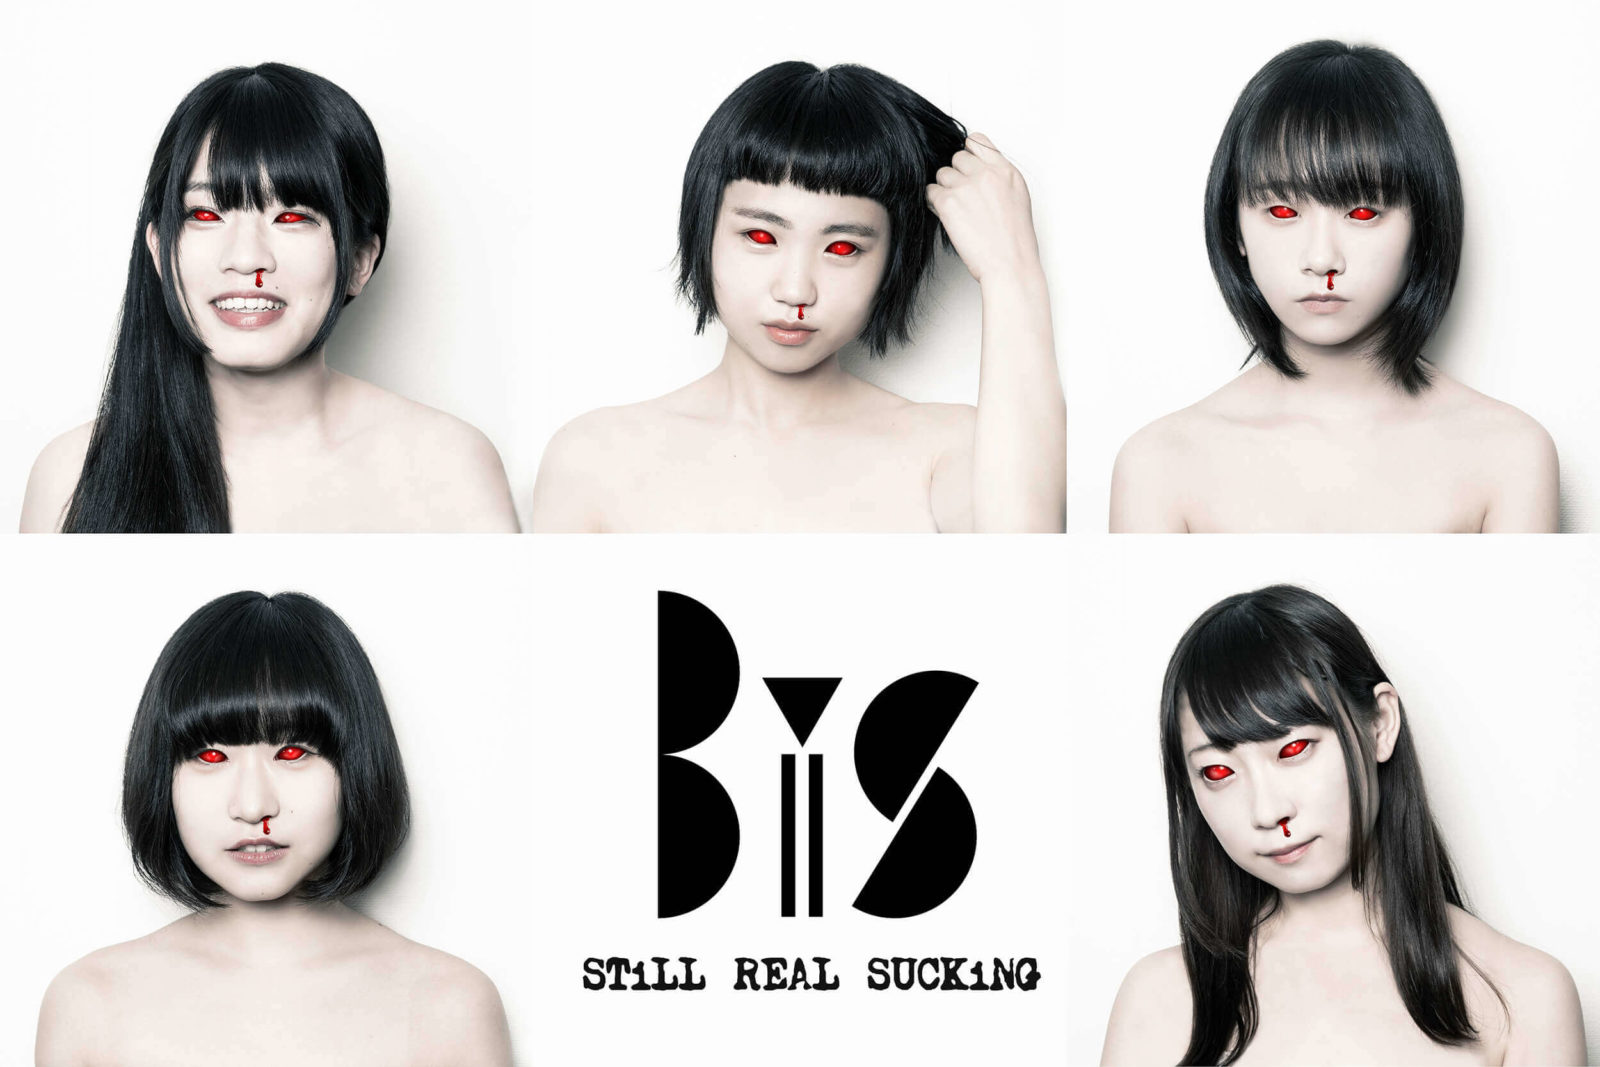 第3期BiS、アルバム「Brand-new idol Society」リリース決定サムネイル画像!